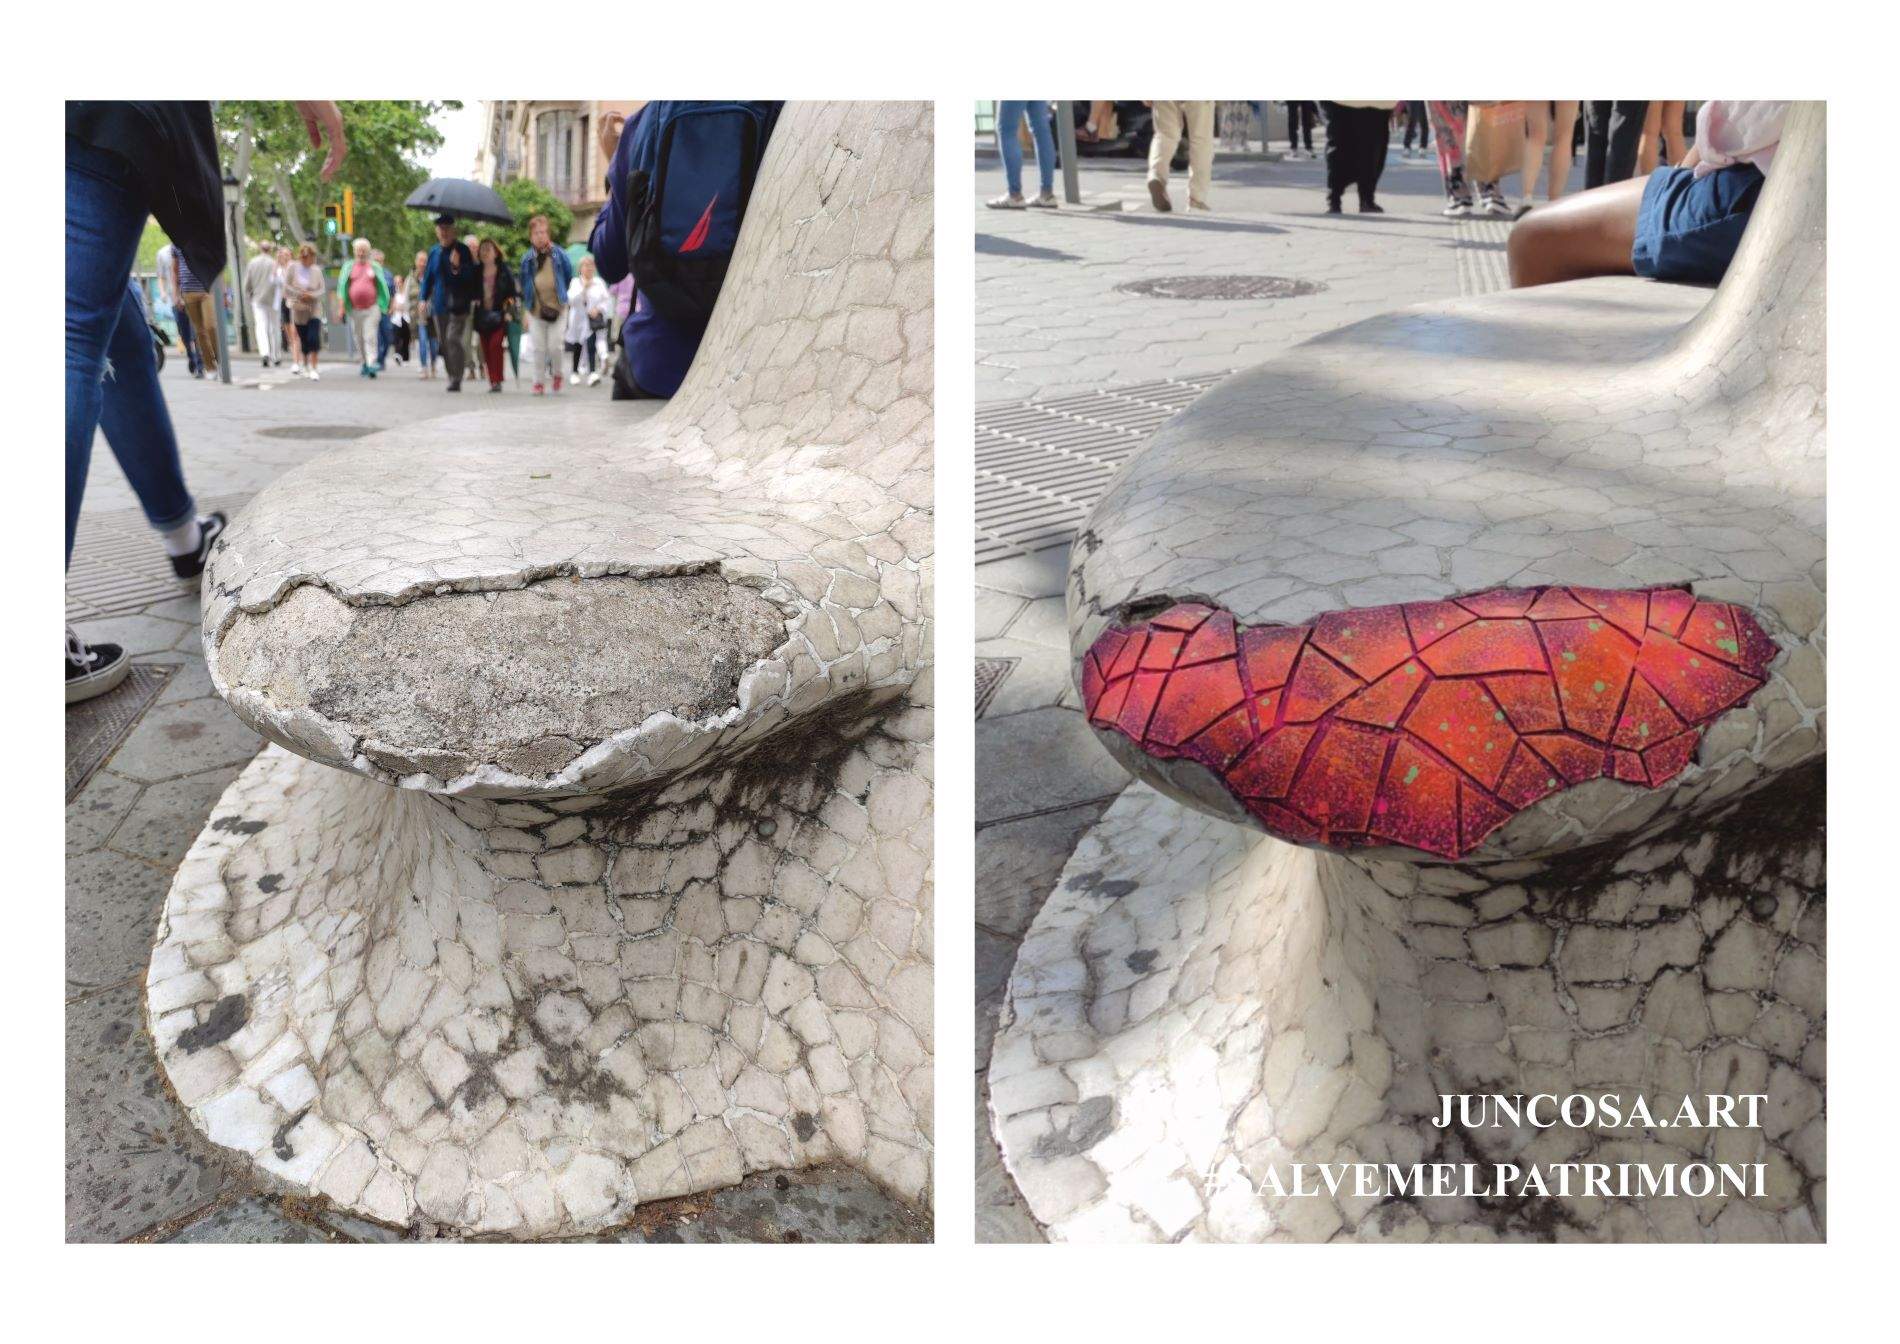 Un artista pone en evidencia el mal estado de los bancos del paseo de Gràcia: los restaura con parches de arte